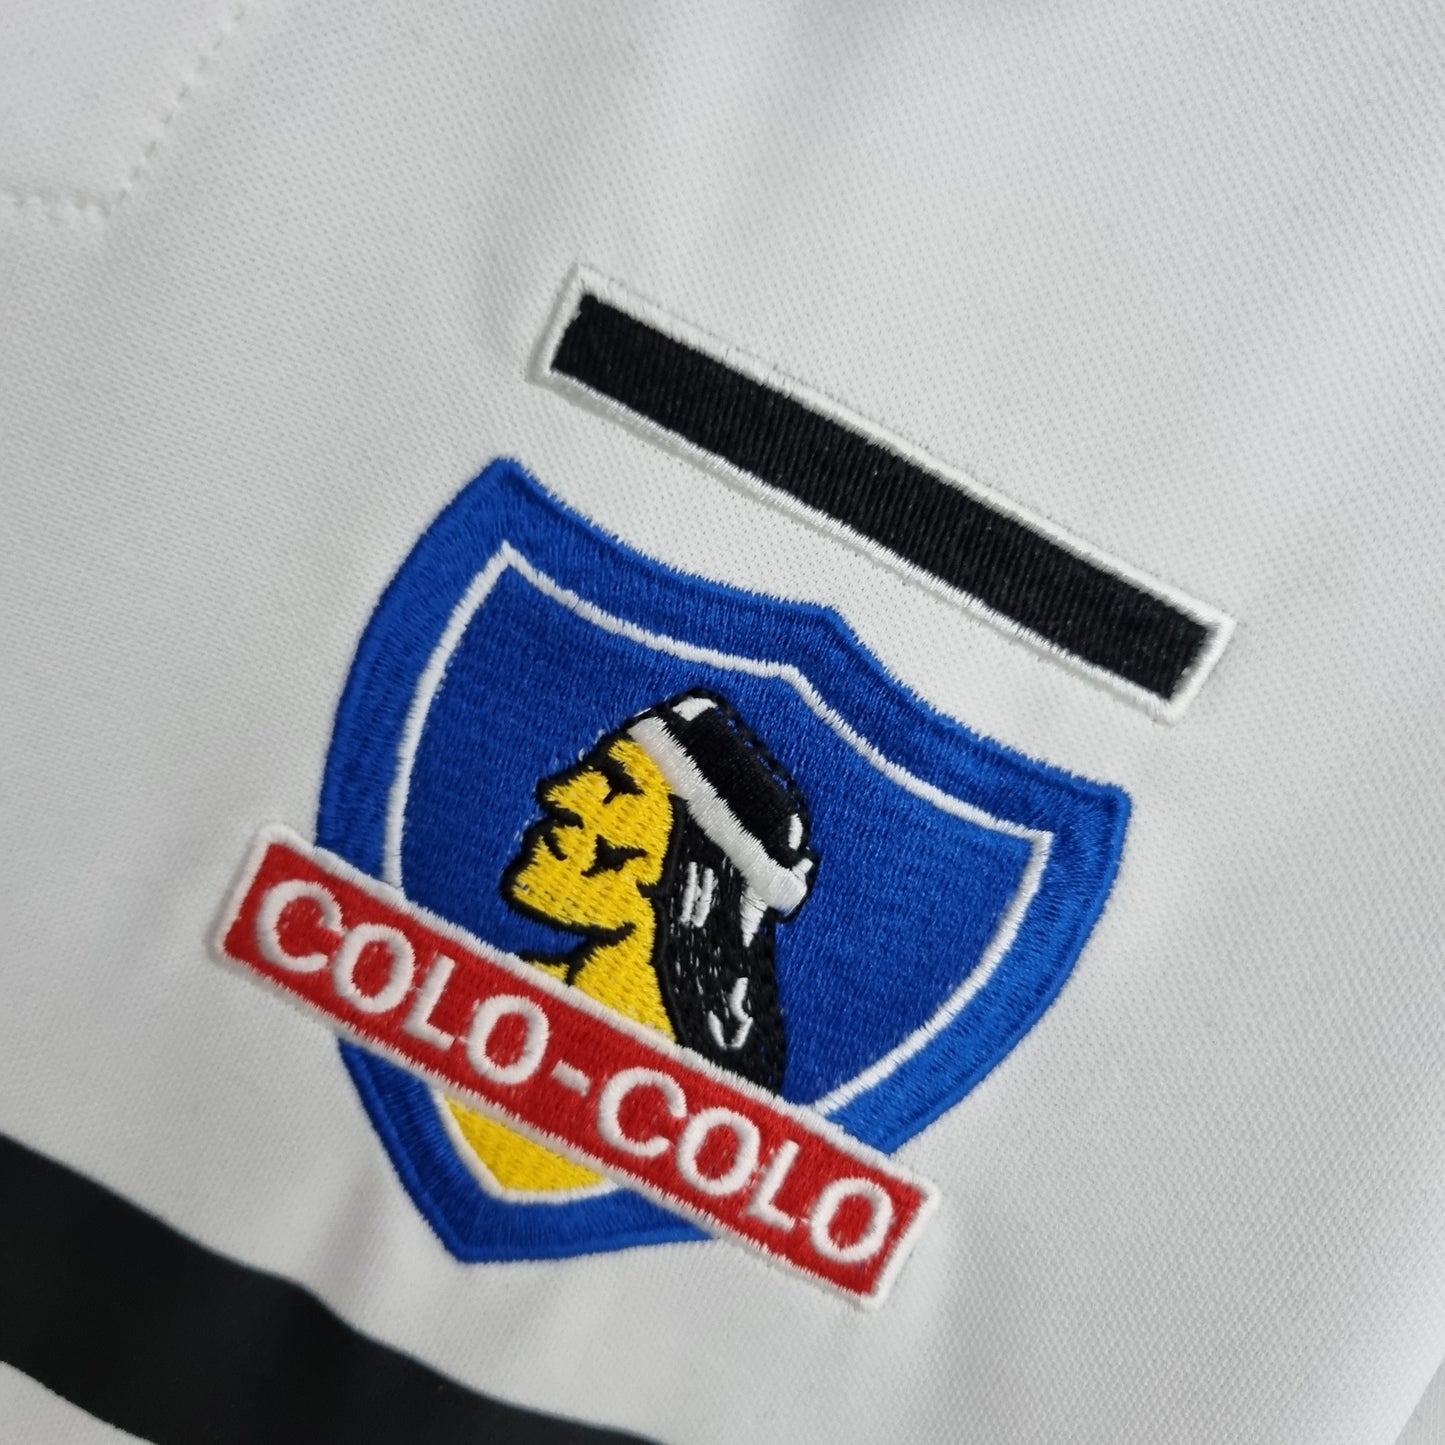 Retro 96/97 Colo Colo Home Kit